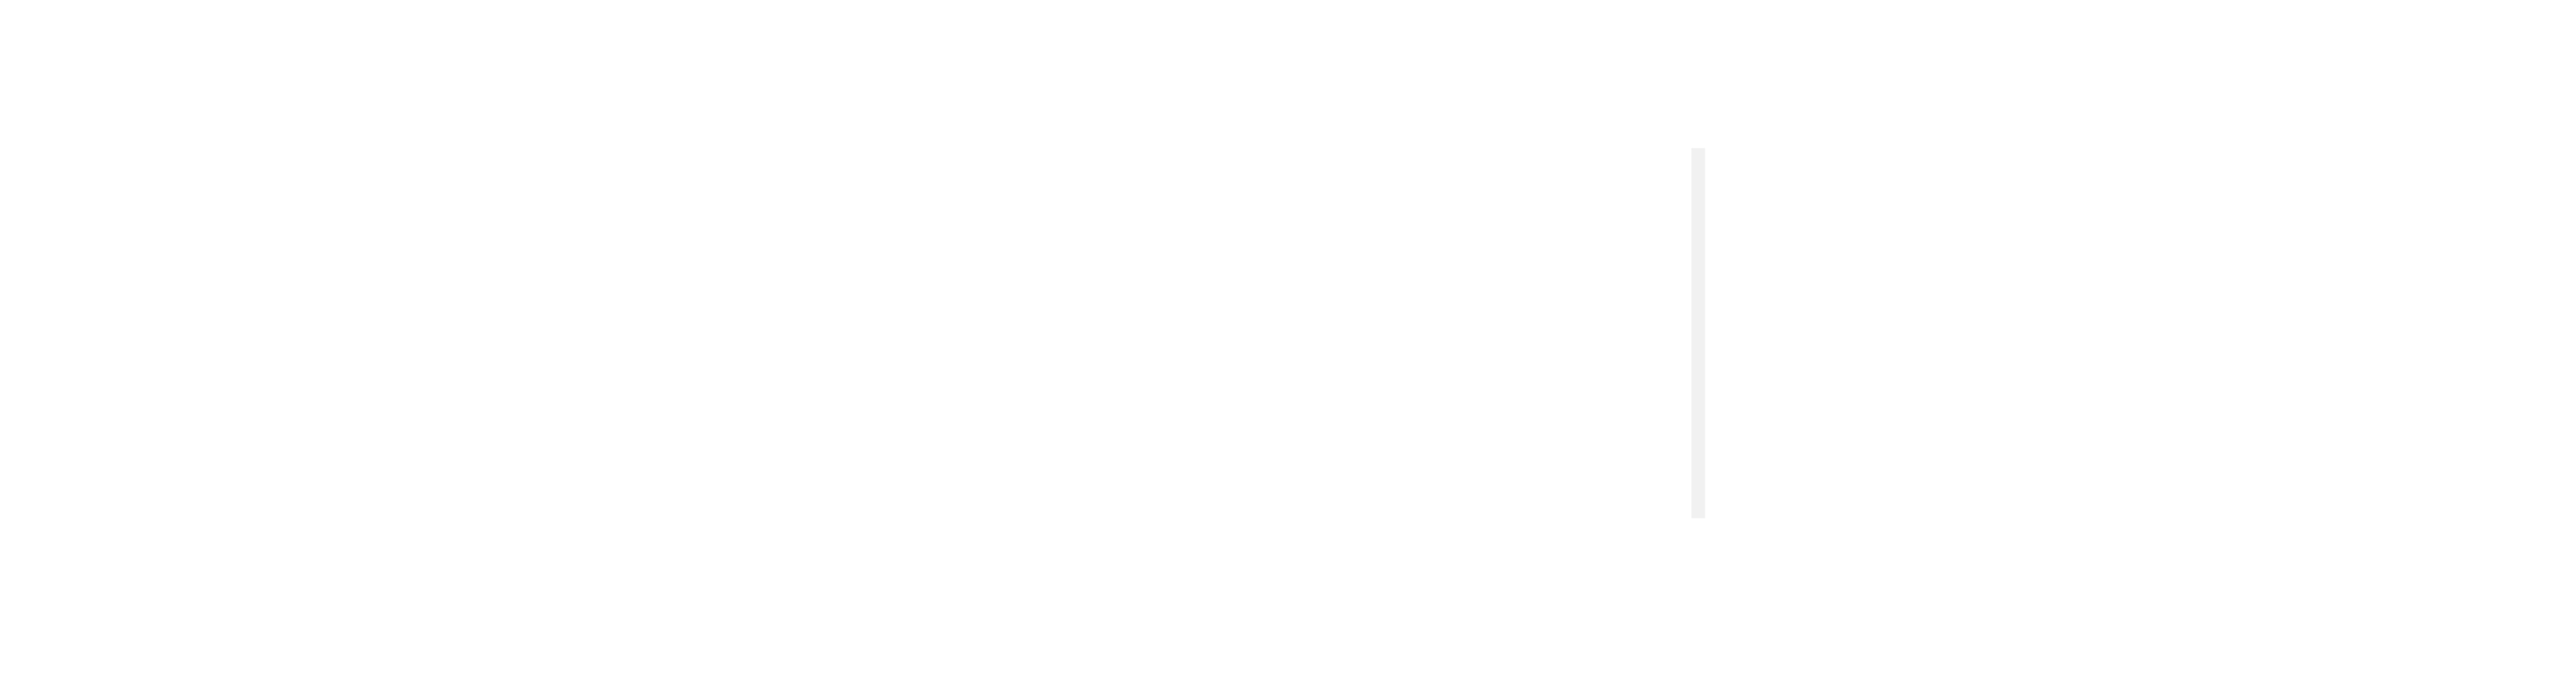 Formació Diputació de València